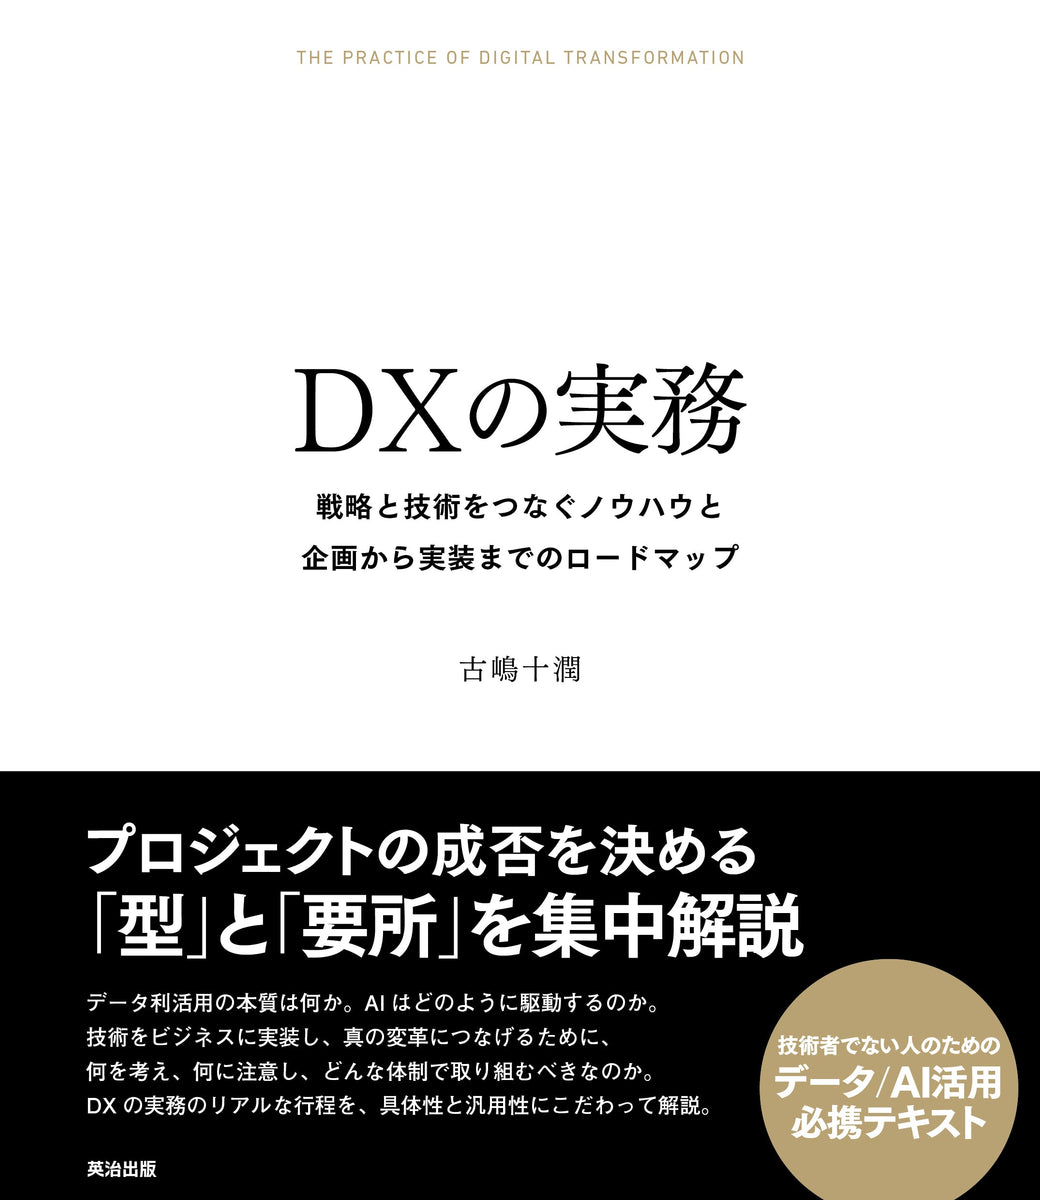 DXの実務――戦略と技術をつなぐノウハウと企画から実装までのロード